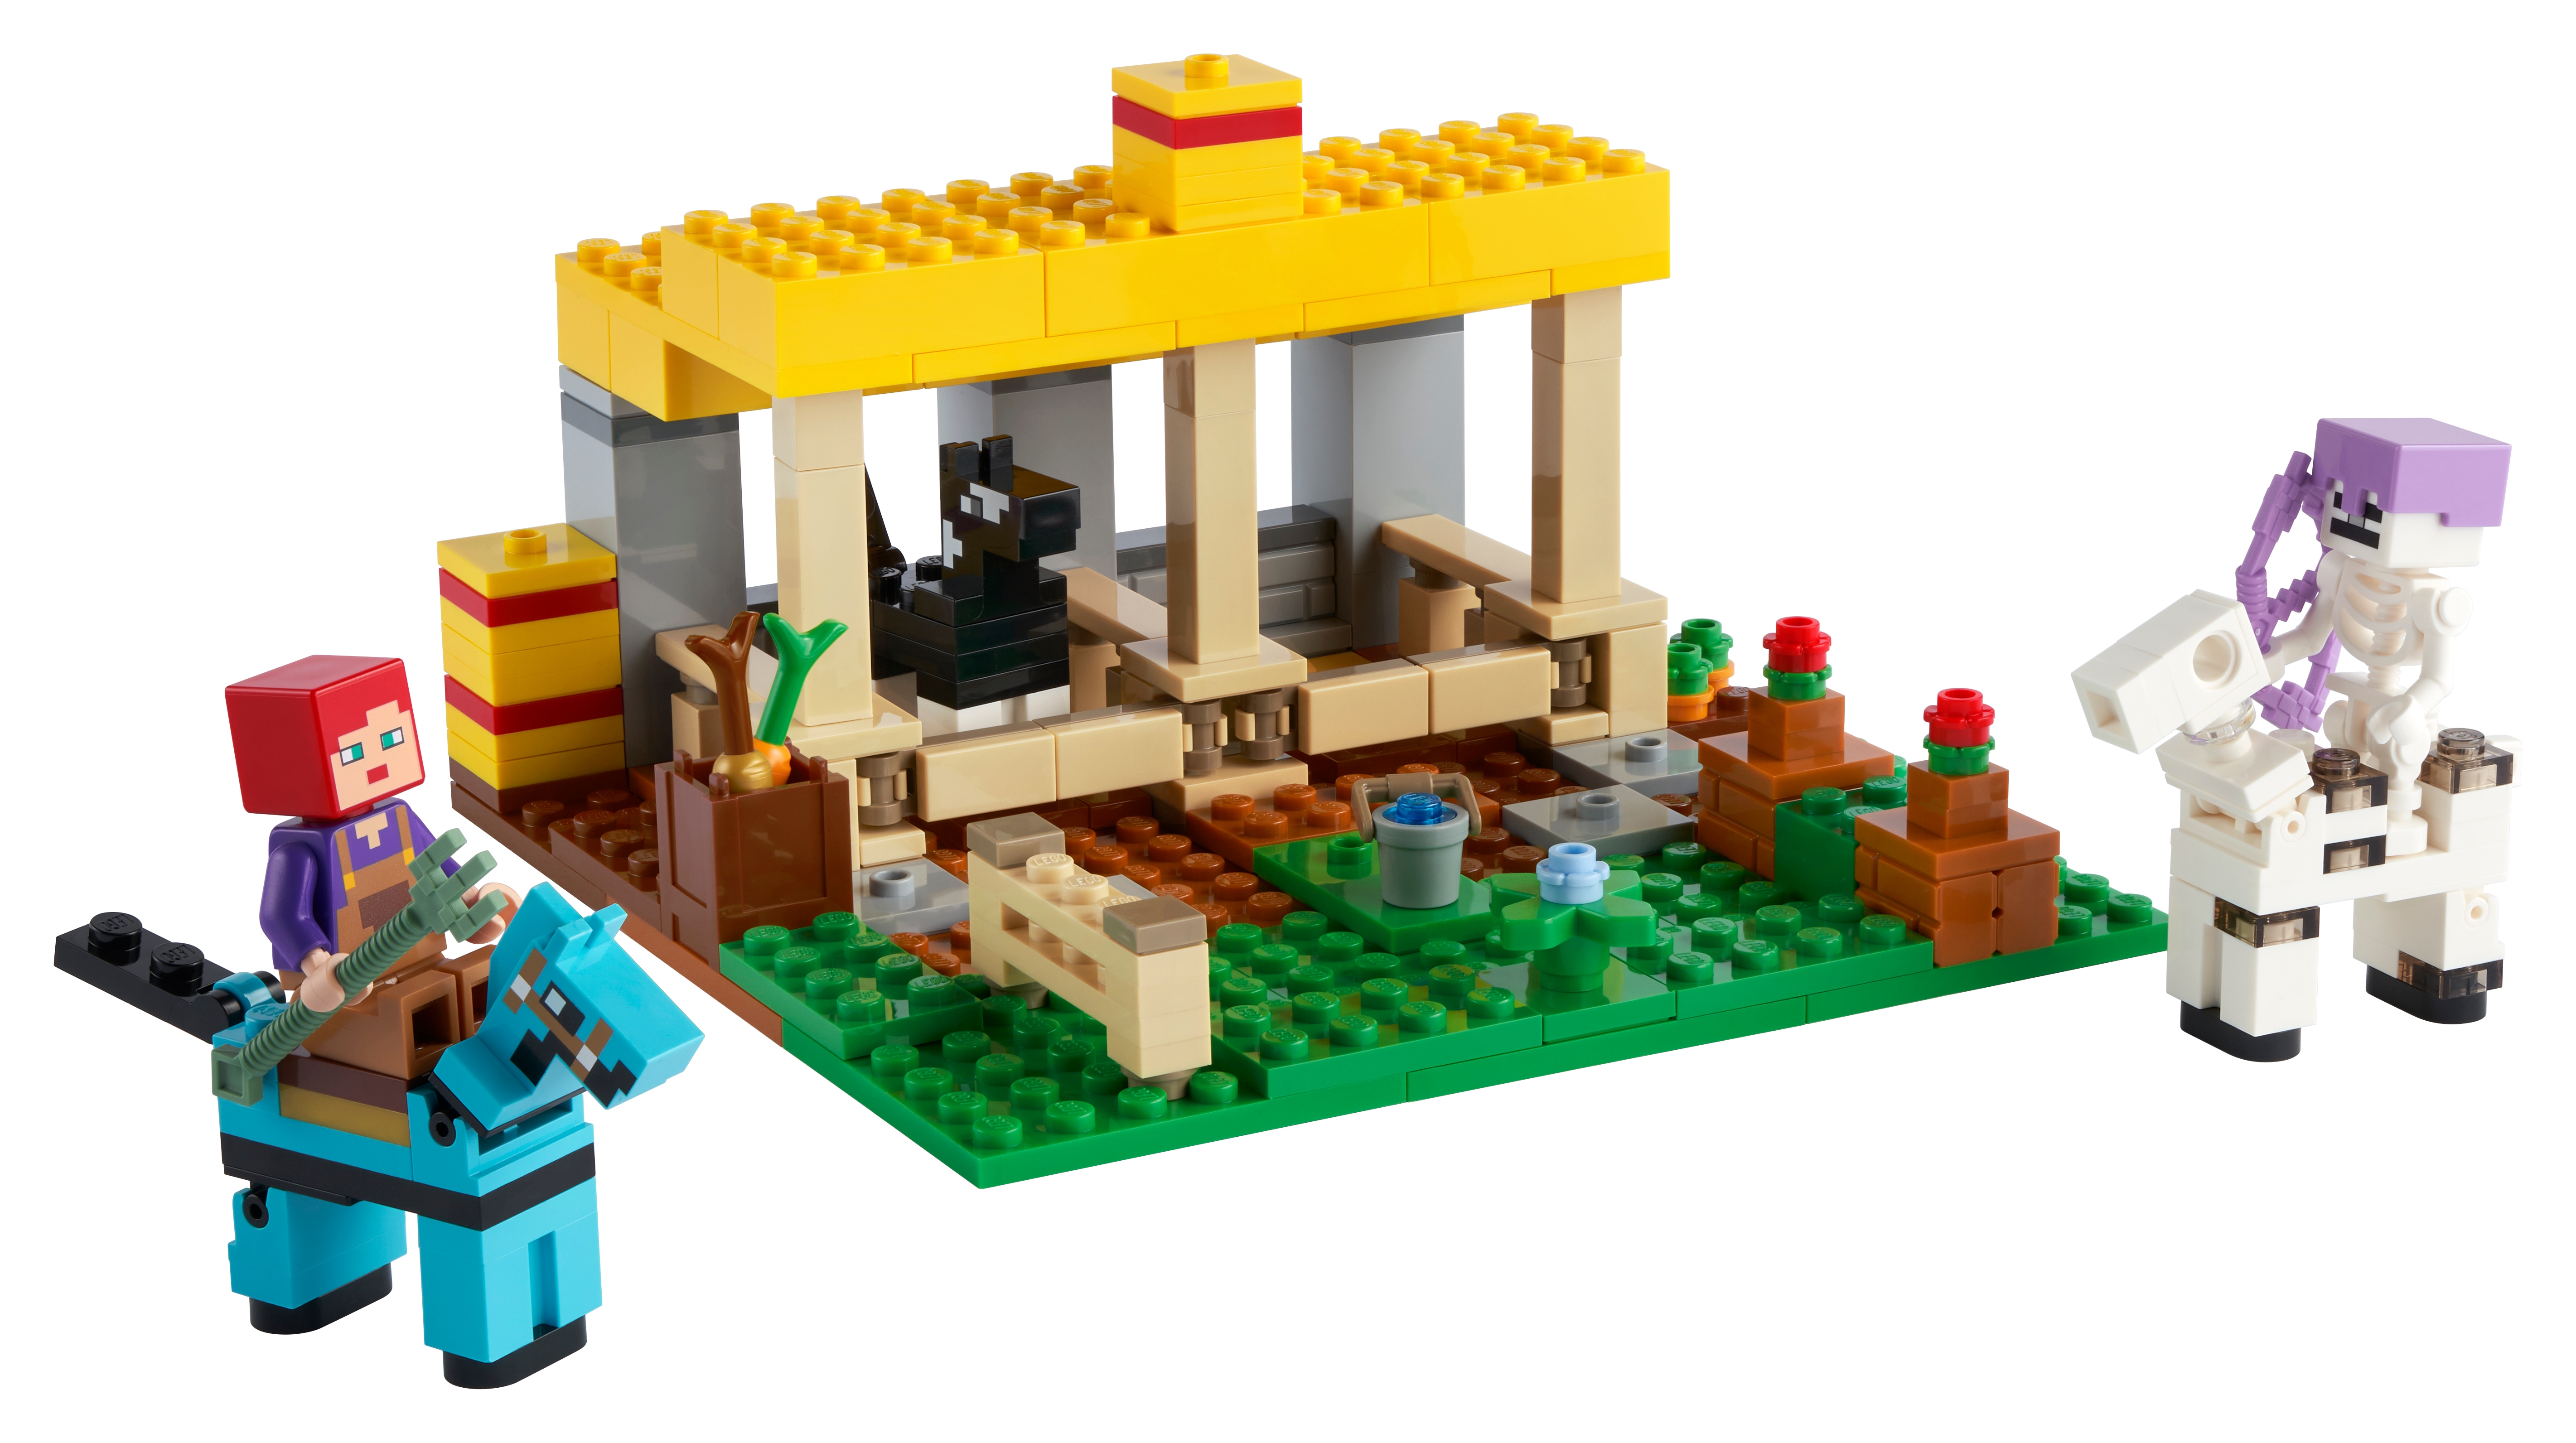 A pie historia cuenta Juguetes y regalos de Minecraft | Oficial LEGO® Shop AR